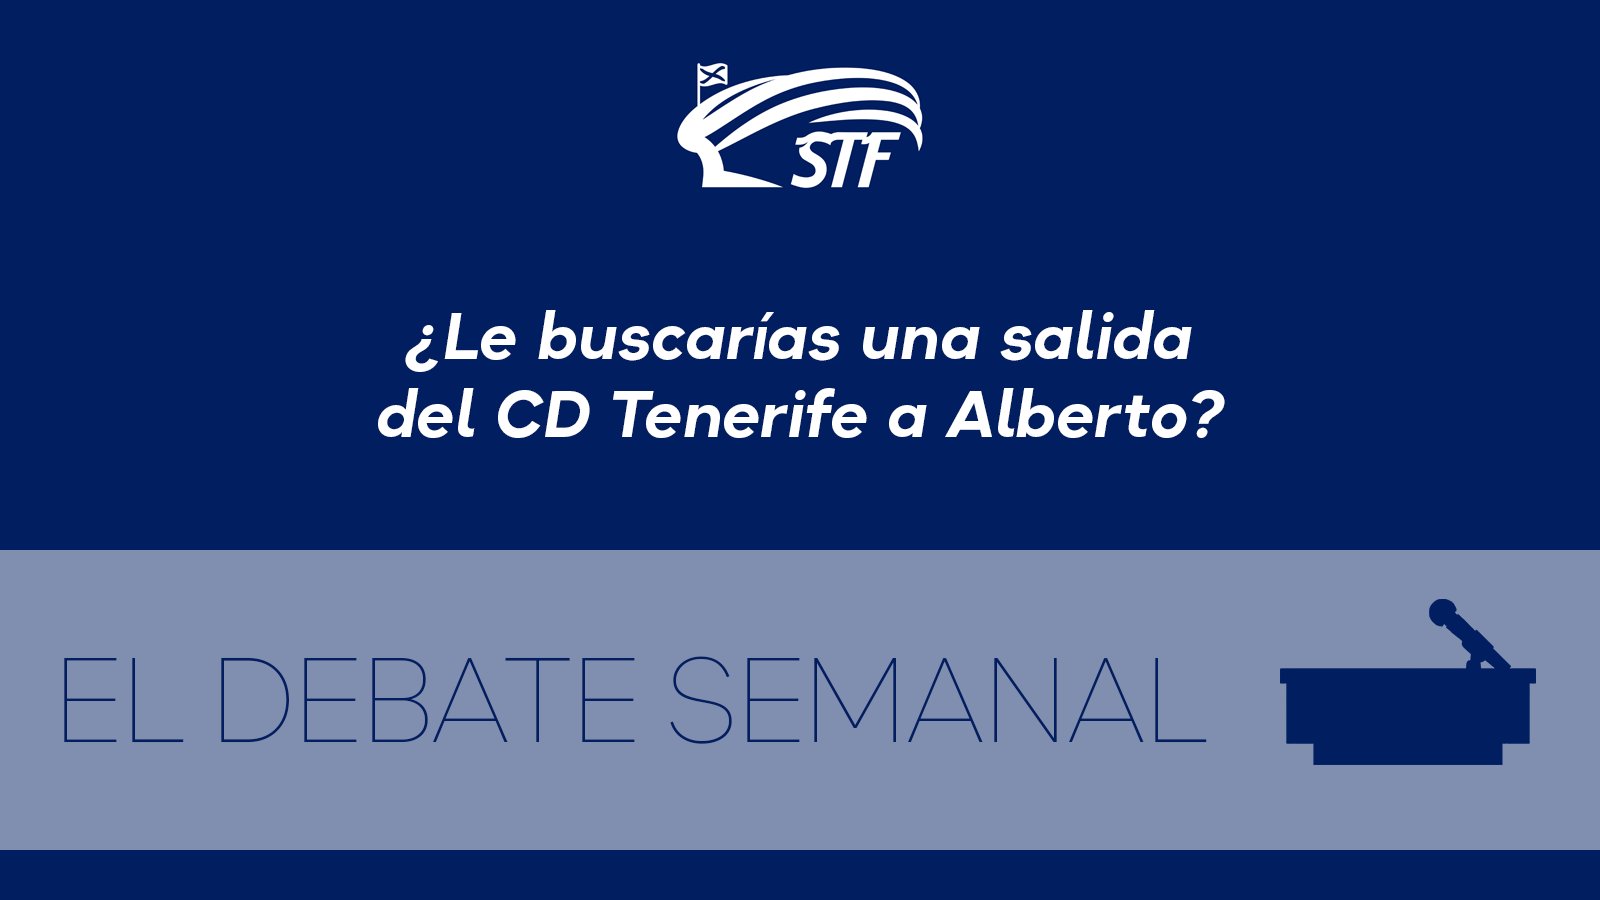 El Debate Semanal: ¿Le buscarías una salida del CD Tenerife a Alberto? El 96,55% dice sí